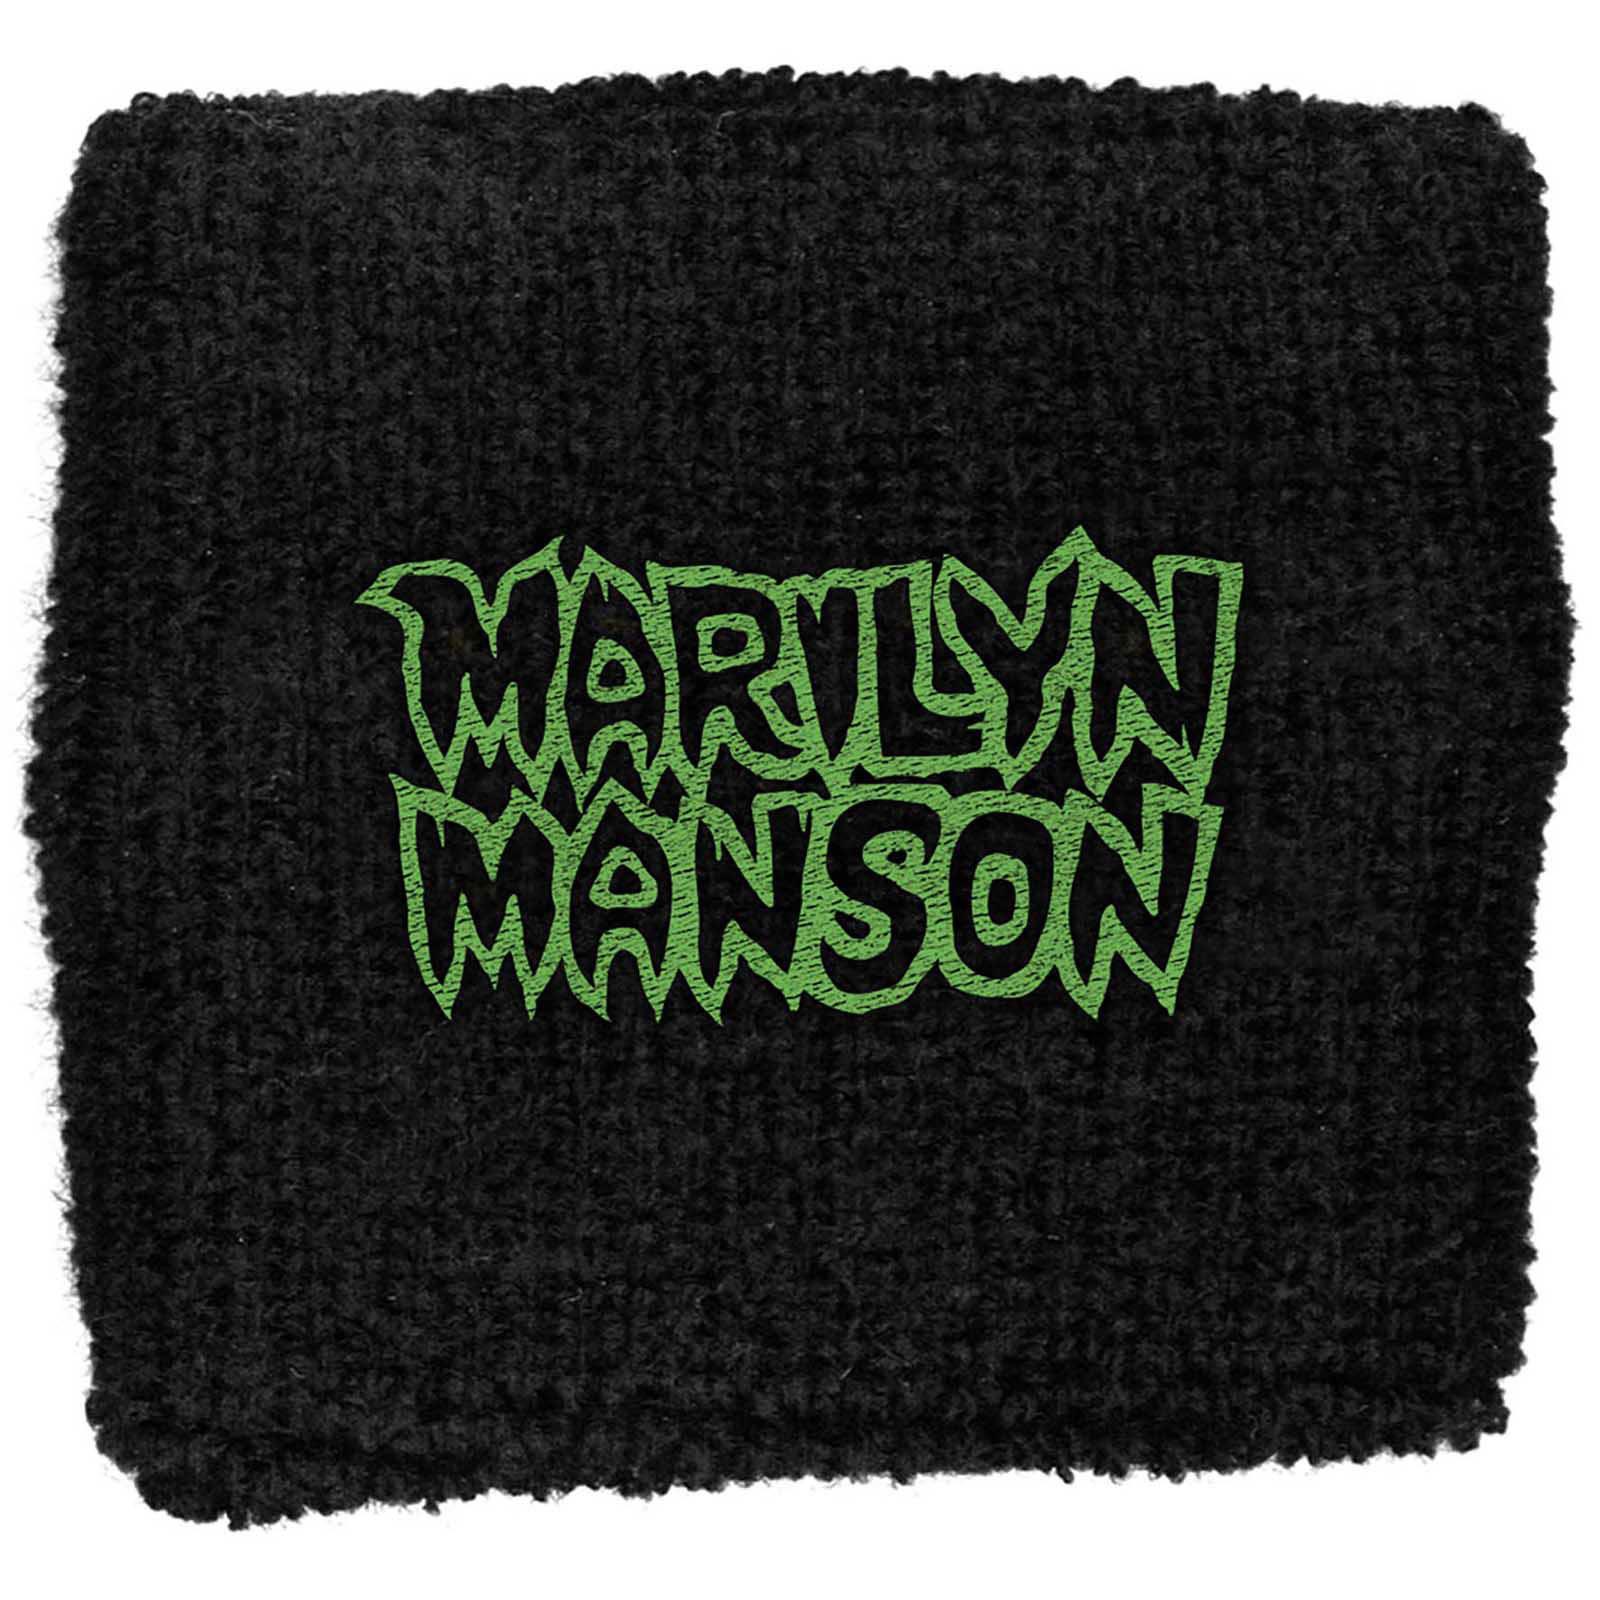 (マリリン・マンソン) Marilyn Manson オフィシャル商品 ロゴ リストバンド 布地 スエットバンド 【海..